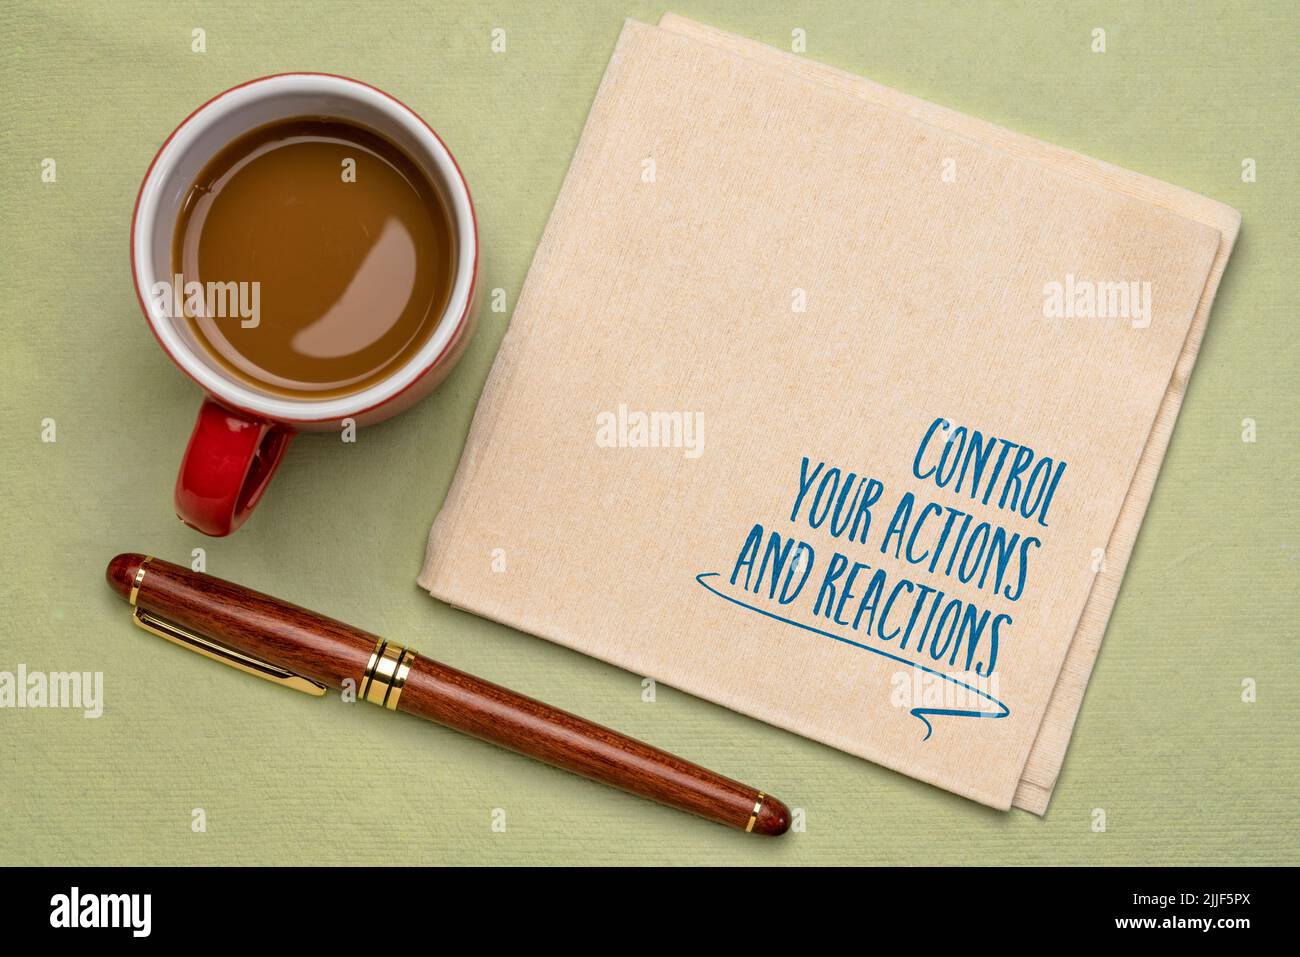 Kontrollieren Sie Ihre Handlungen und Reaktionen inspirierende Ratschläge, Handschrift auf einer Serviette mit Kaffee, persönliche Entwicklung und Selbstverbesserungskonzept Stockfoto